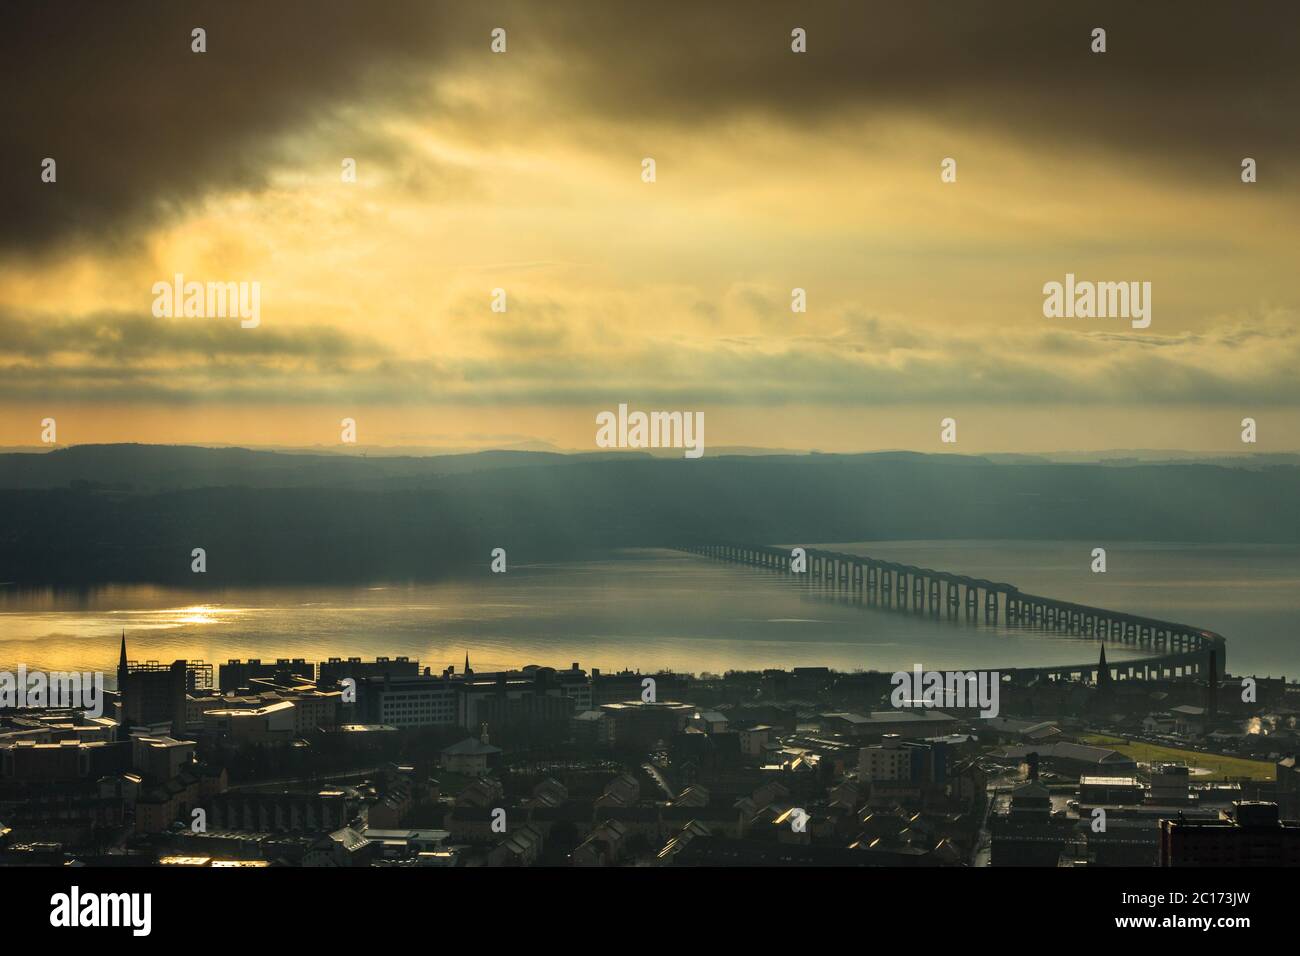 La ville de Dundee et le pont ferroviaire Tay de Dundee Law, Dundee, Écosse, Royaume-Uni. Banque D'Images